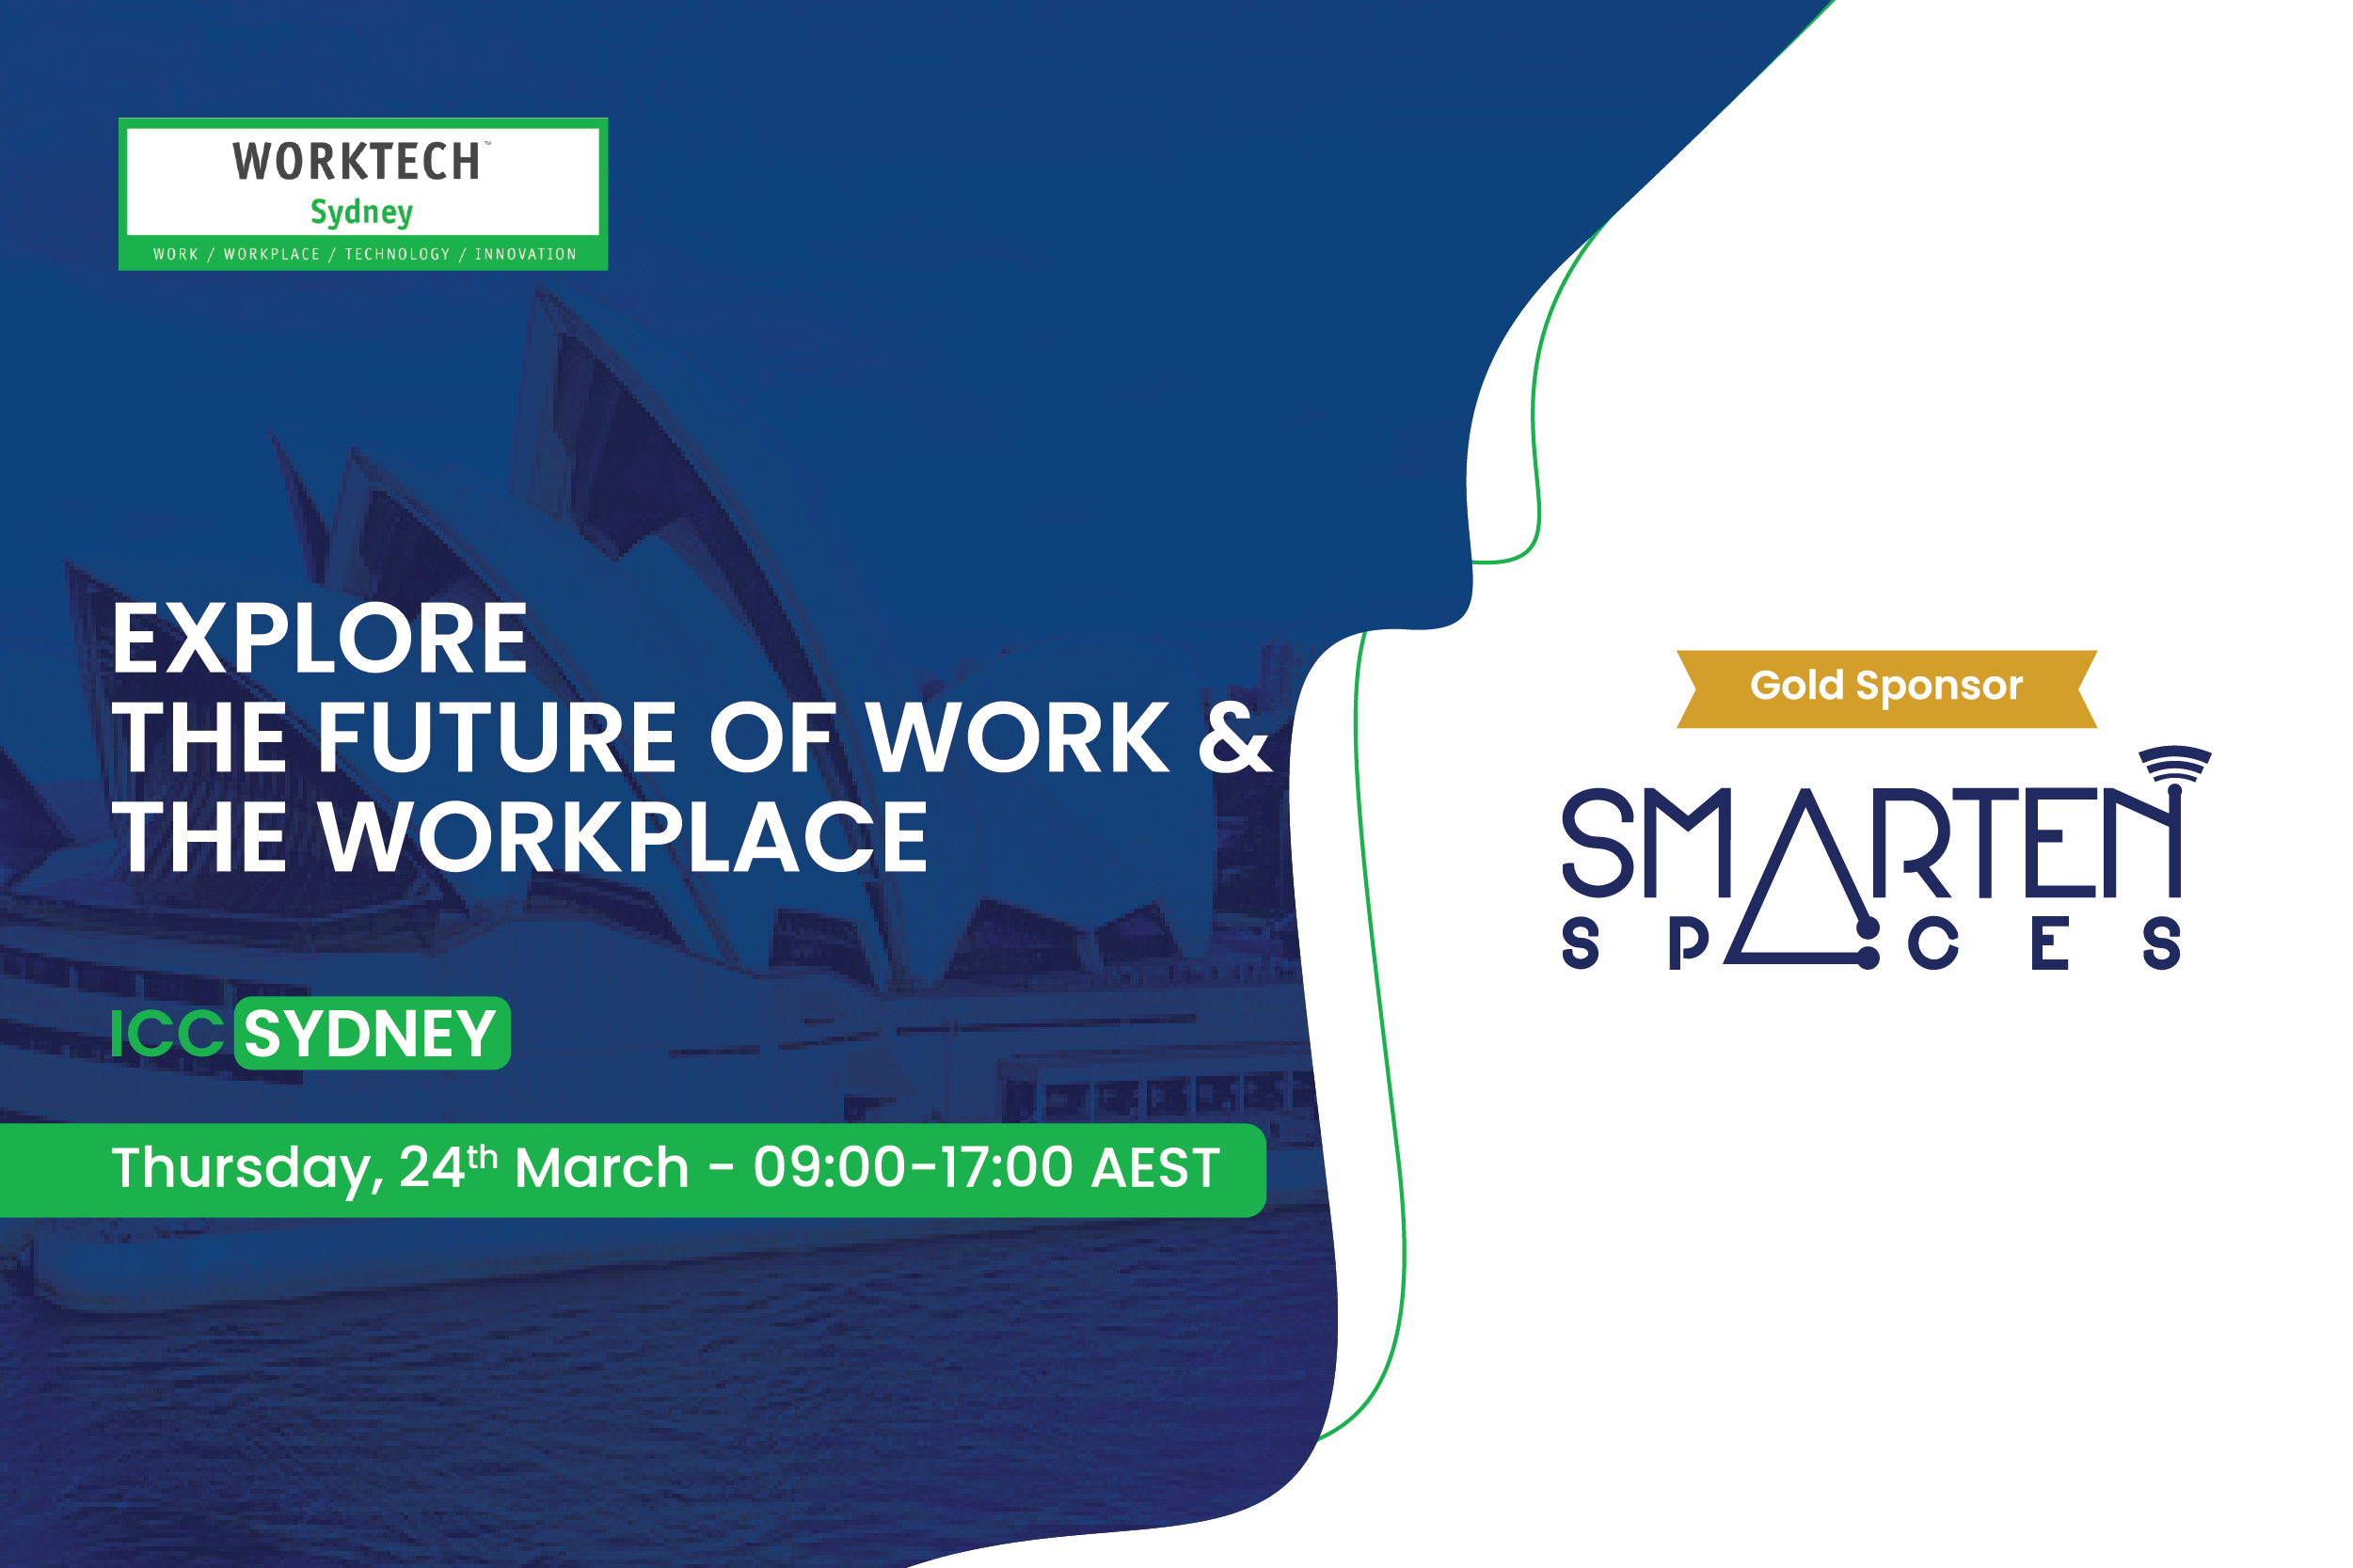 Smarten Spaces announces gold sponsorship for Worktech22 Sydney